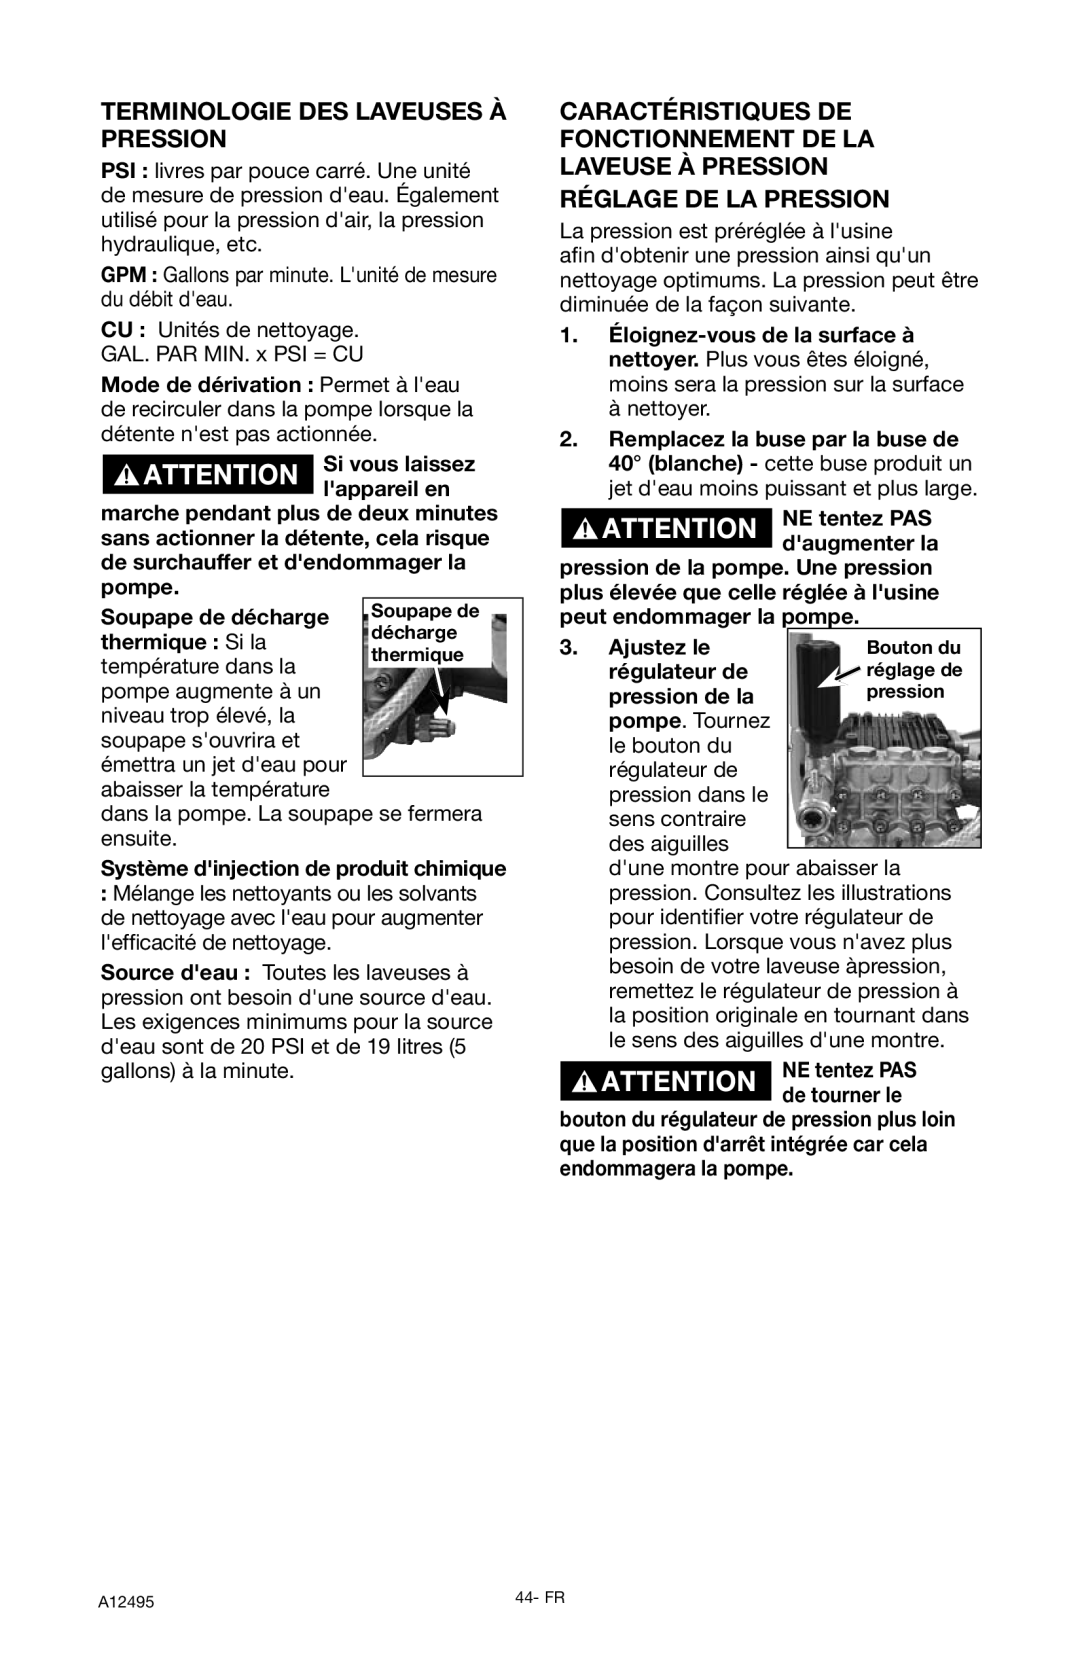 DeVillbiss Air Power Company PWH3635, A12495 operation manual Terminologie Des Laveuses À Pression, Réglage De La Pression 